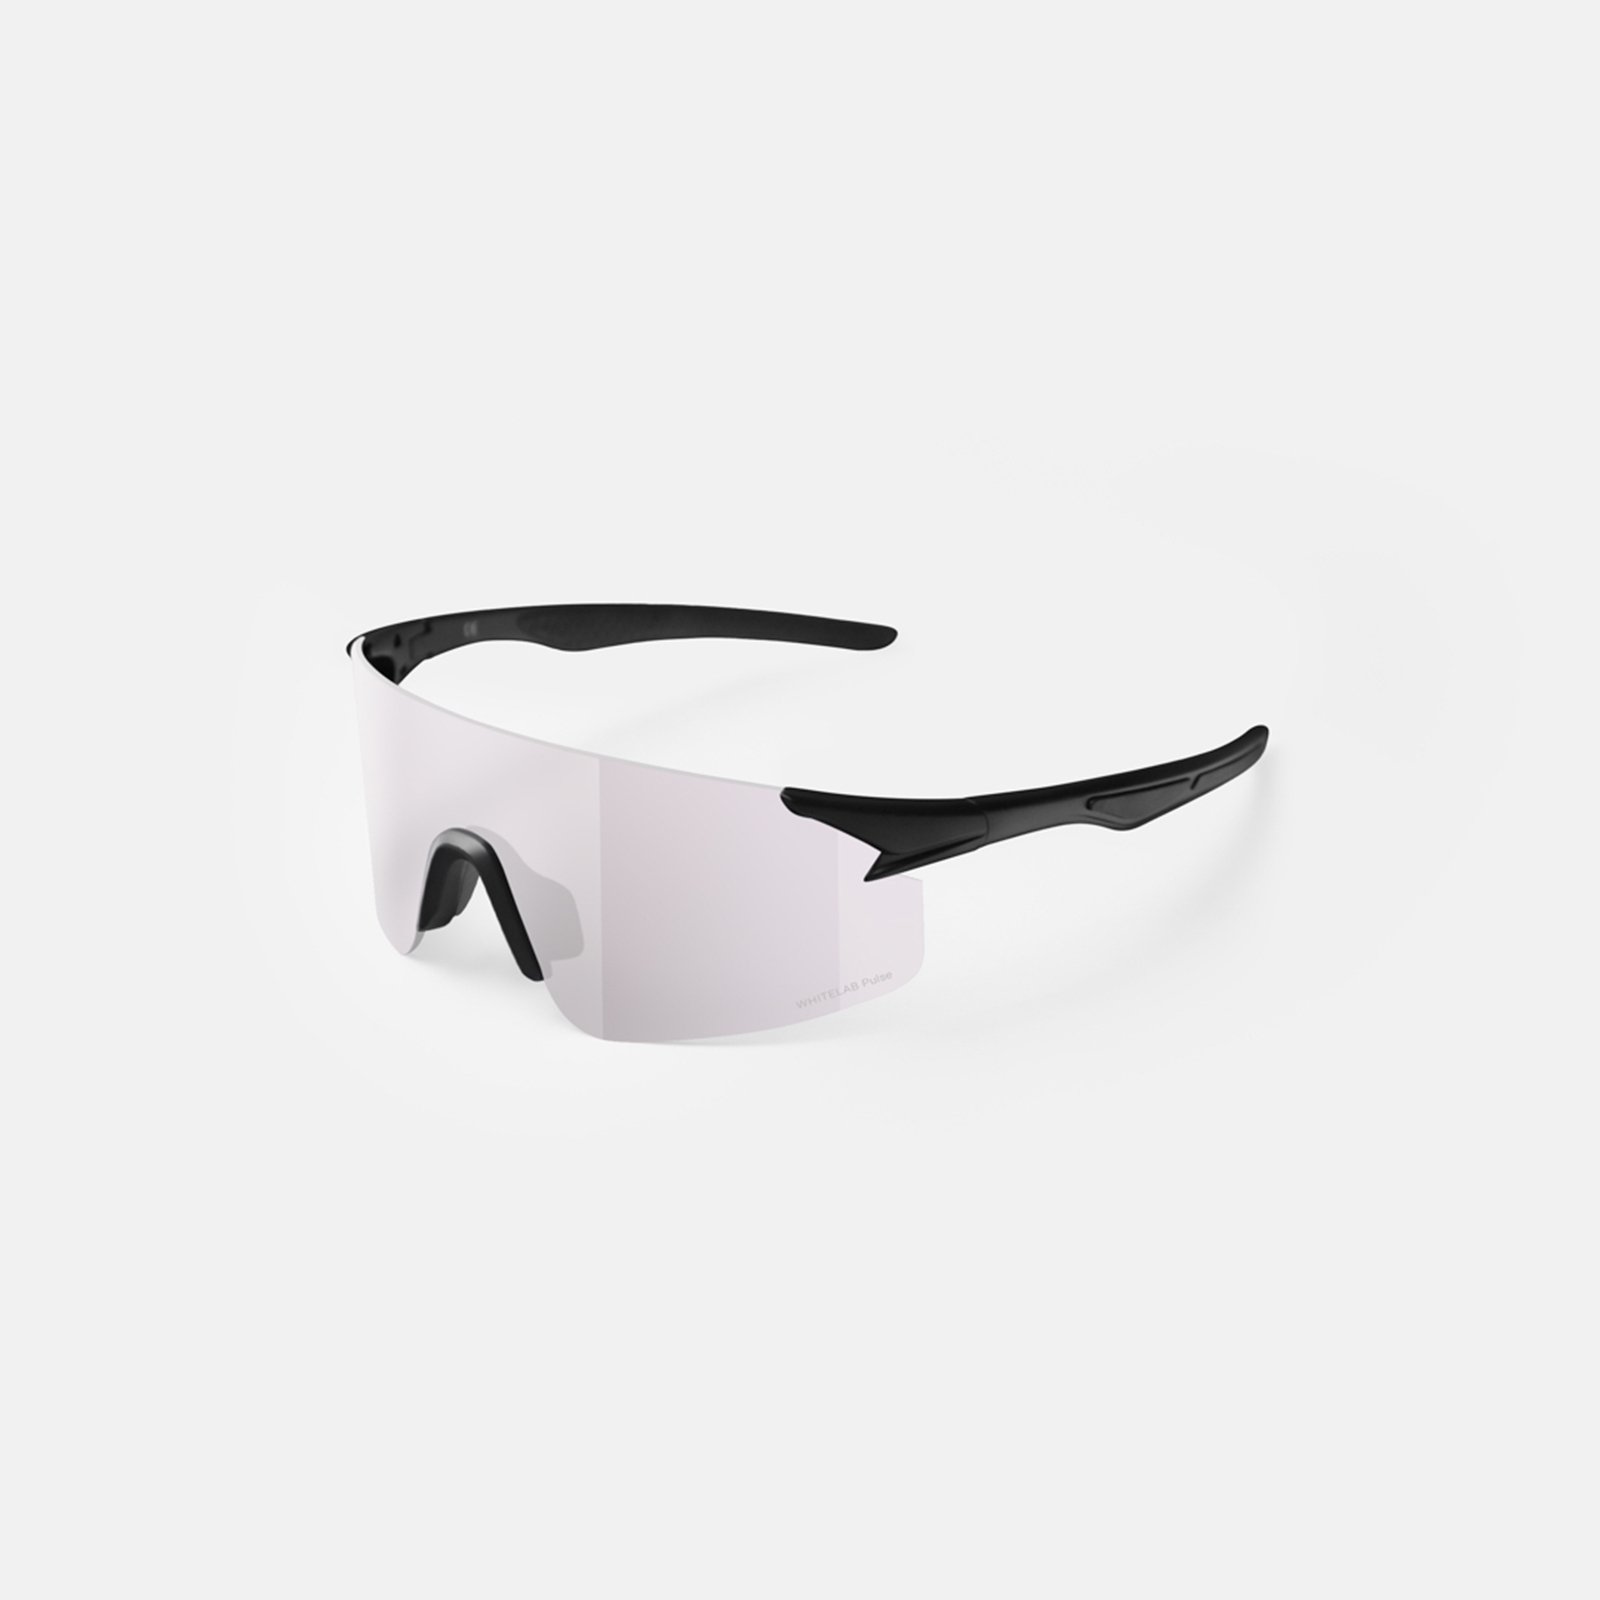  черные солнцезащитные очки White Lab Visor Visor black/black - цена, описание, фото 3